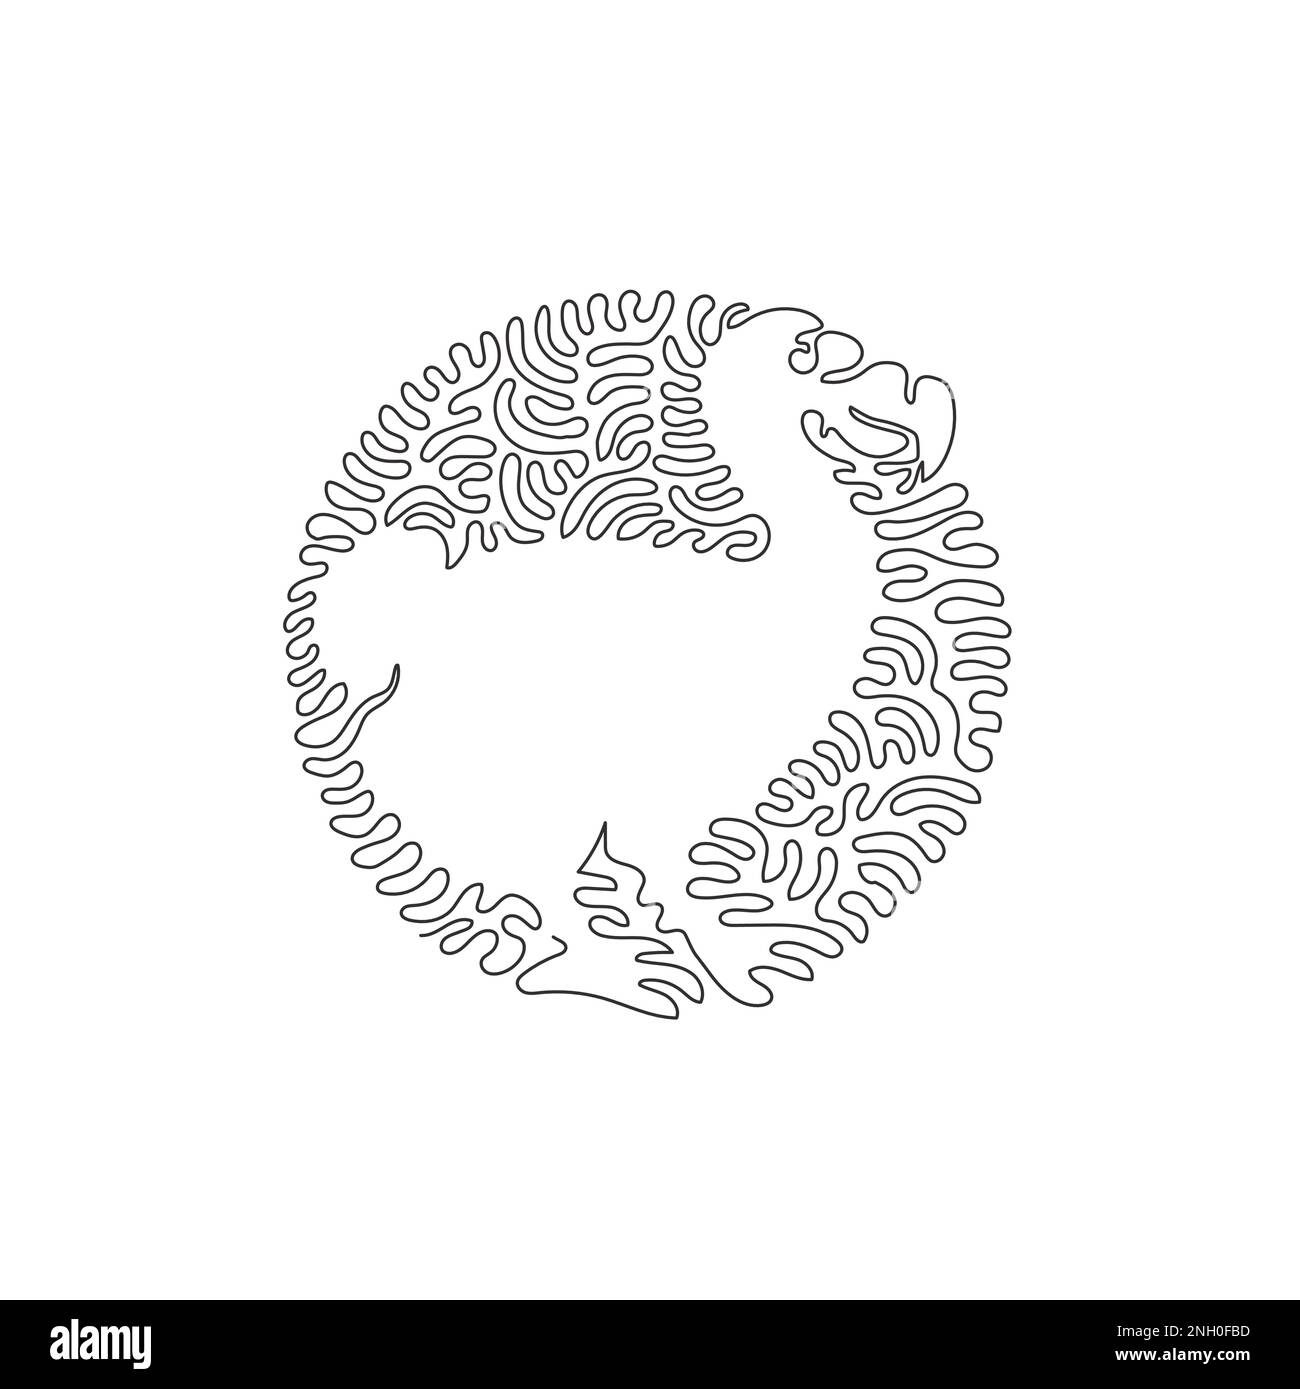 Eine einzelne Zeichnung mit einer geschwungenen Linie aus süßer abstrakter Dodo-Kunst. Durchgehende Linie Zeichnen eines grafischen Designvektors Darstellung von großen und kräftigen Vögeln als Symbol Stock Vektor